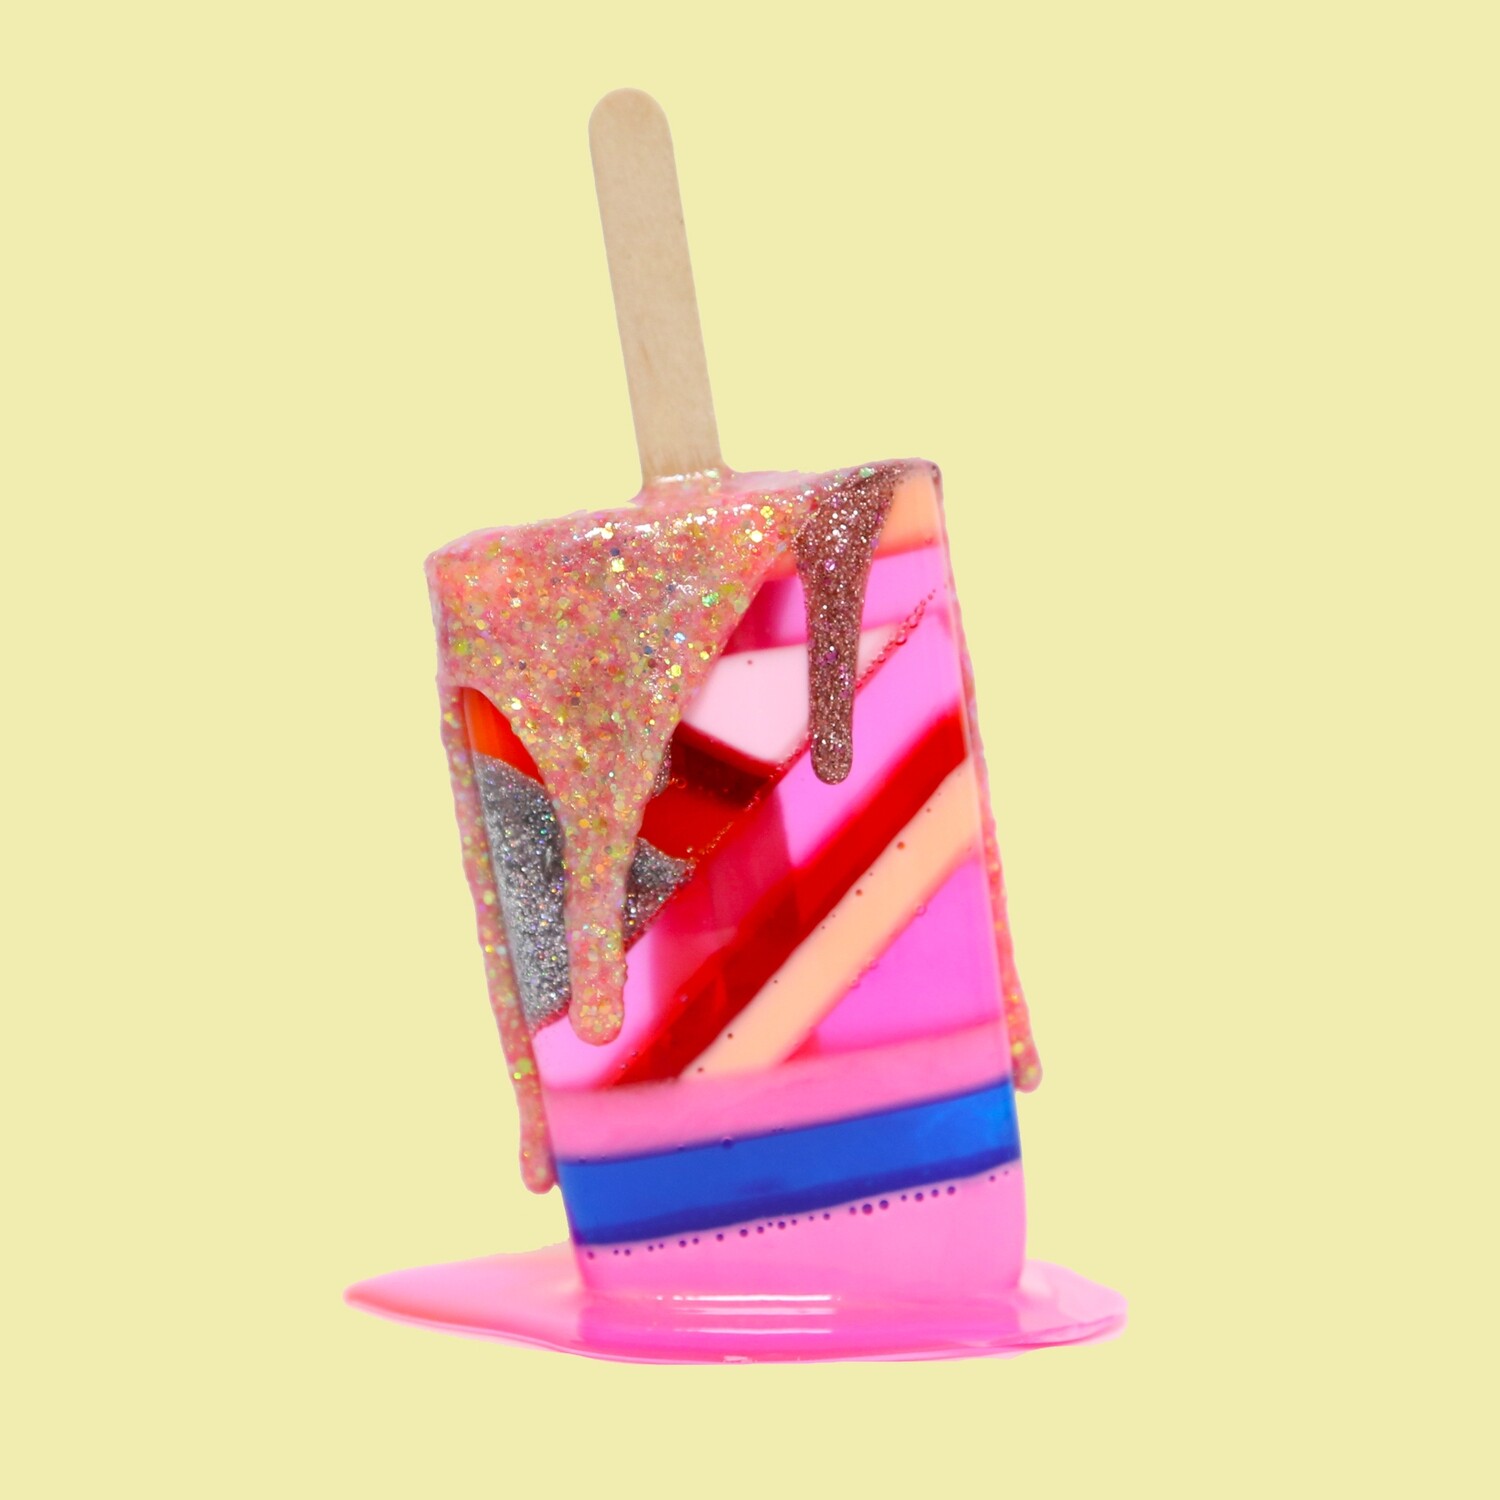 Melting Popsicle Art - Sweetness - Original Melting Pops